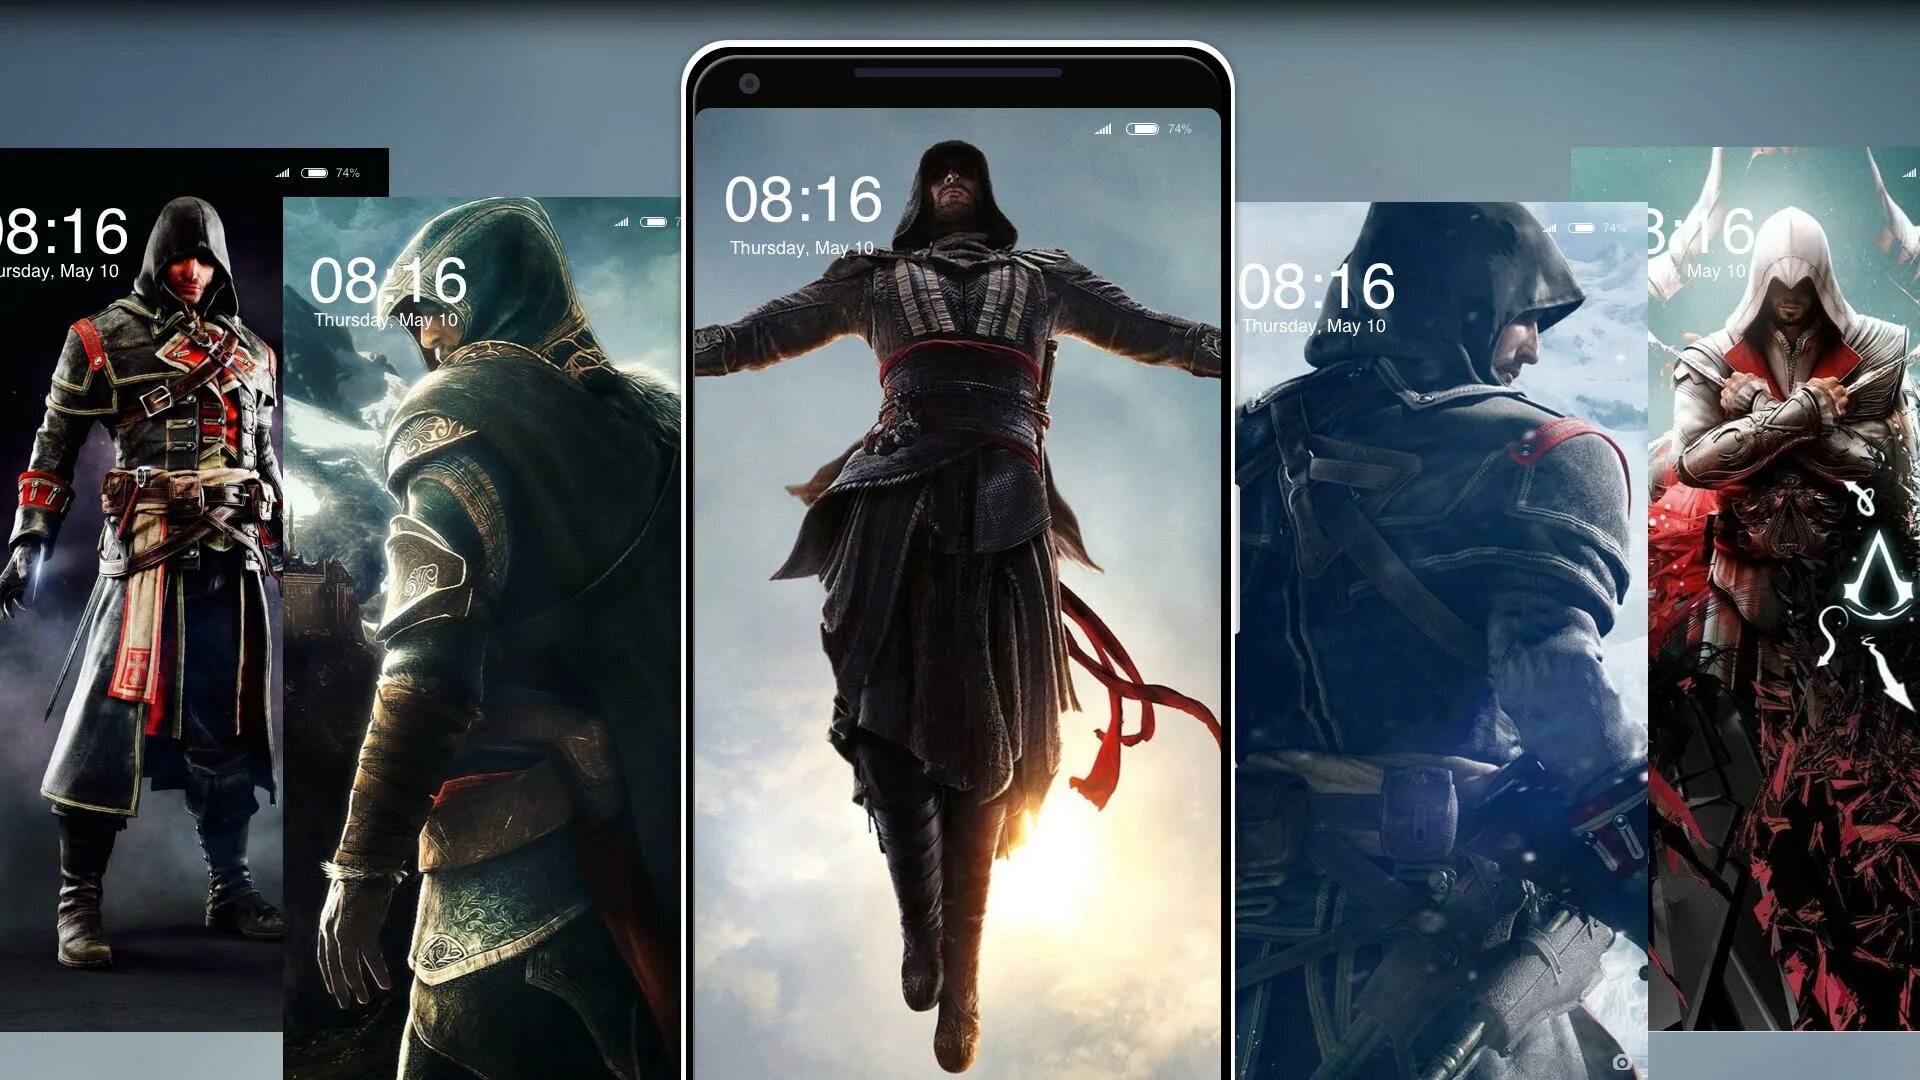 Обои на телефон ассасин. Assassin's Creed обои на телефон. Ассасин Крид на андроид. Обои на андроид ассасин Крид.